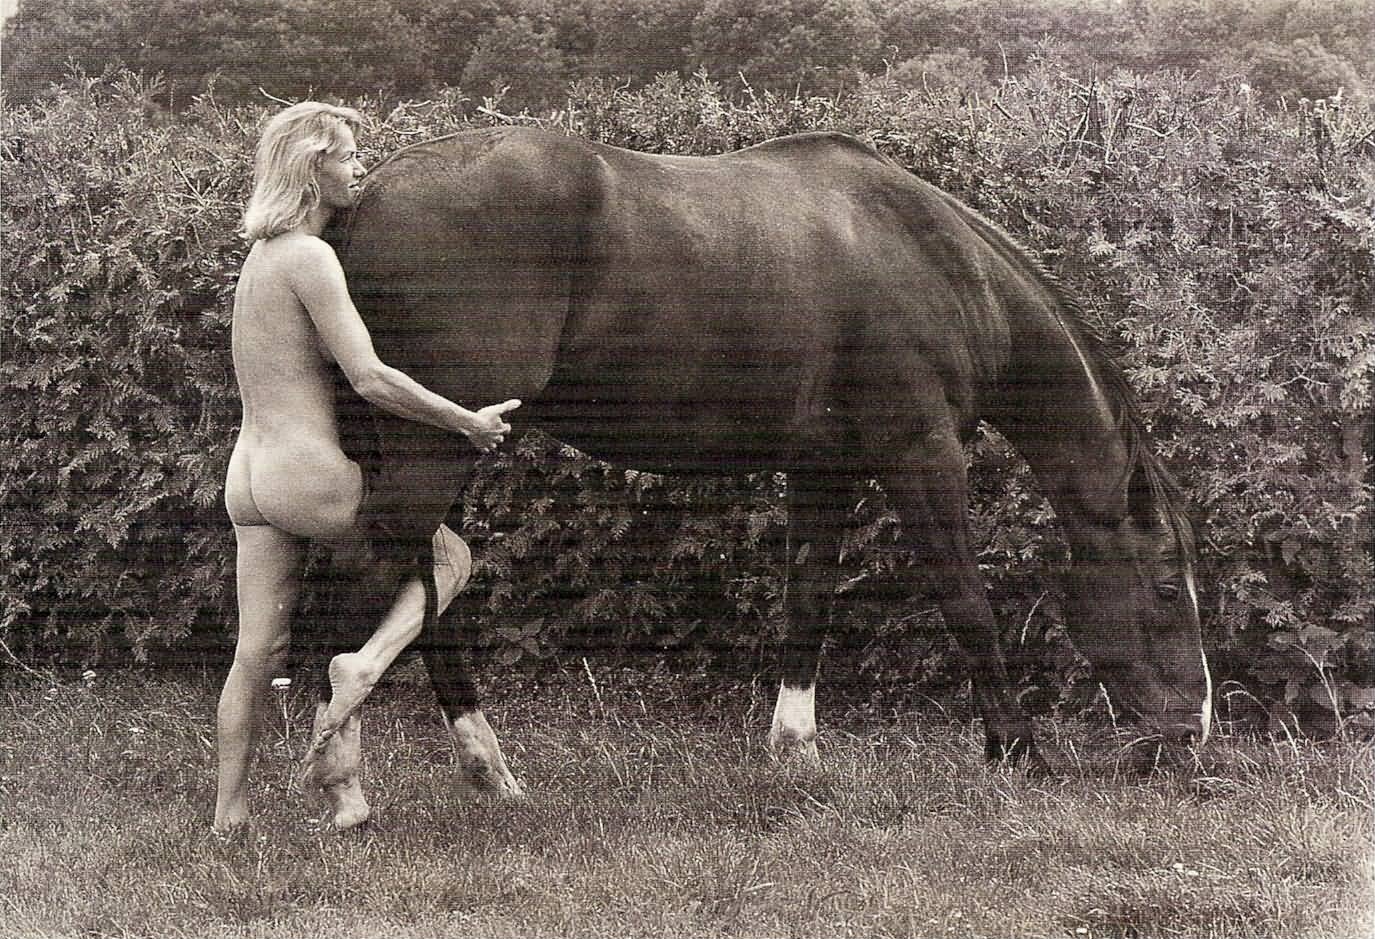 Porn Artsy Bridget Lahie - Beasts in Human Skin: More Horseplay With Brigitte Lahaie